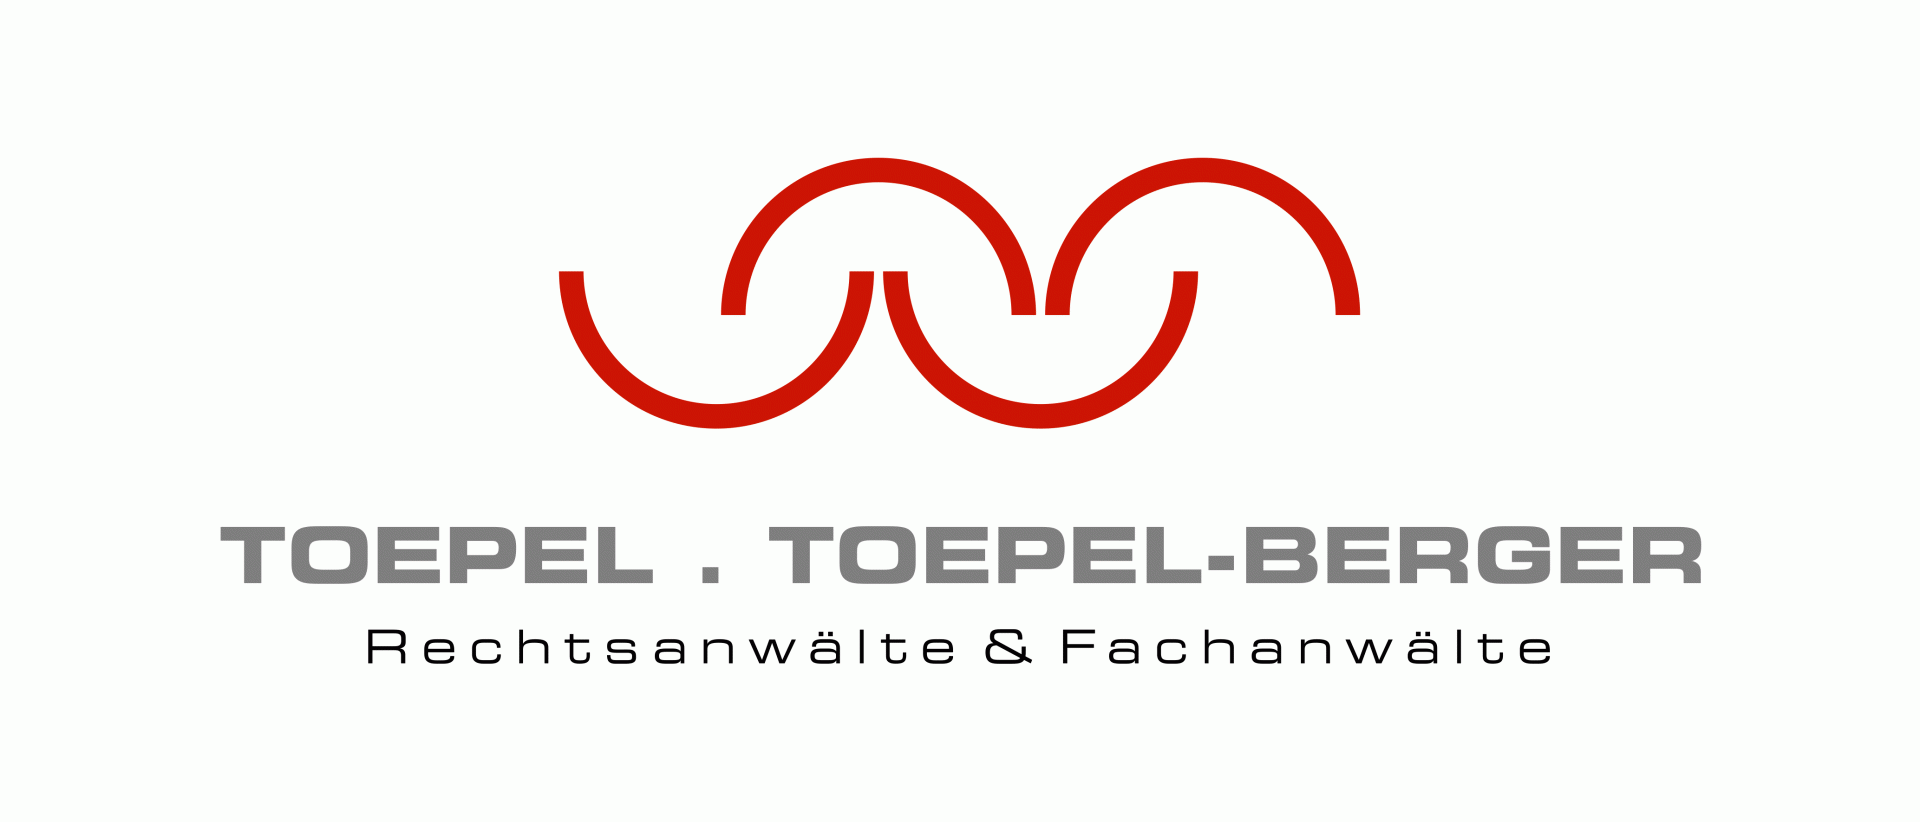 toepel.toepel-berger-Logo